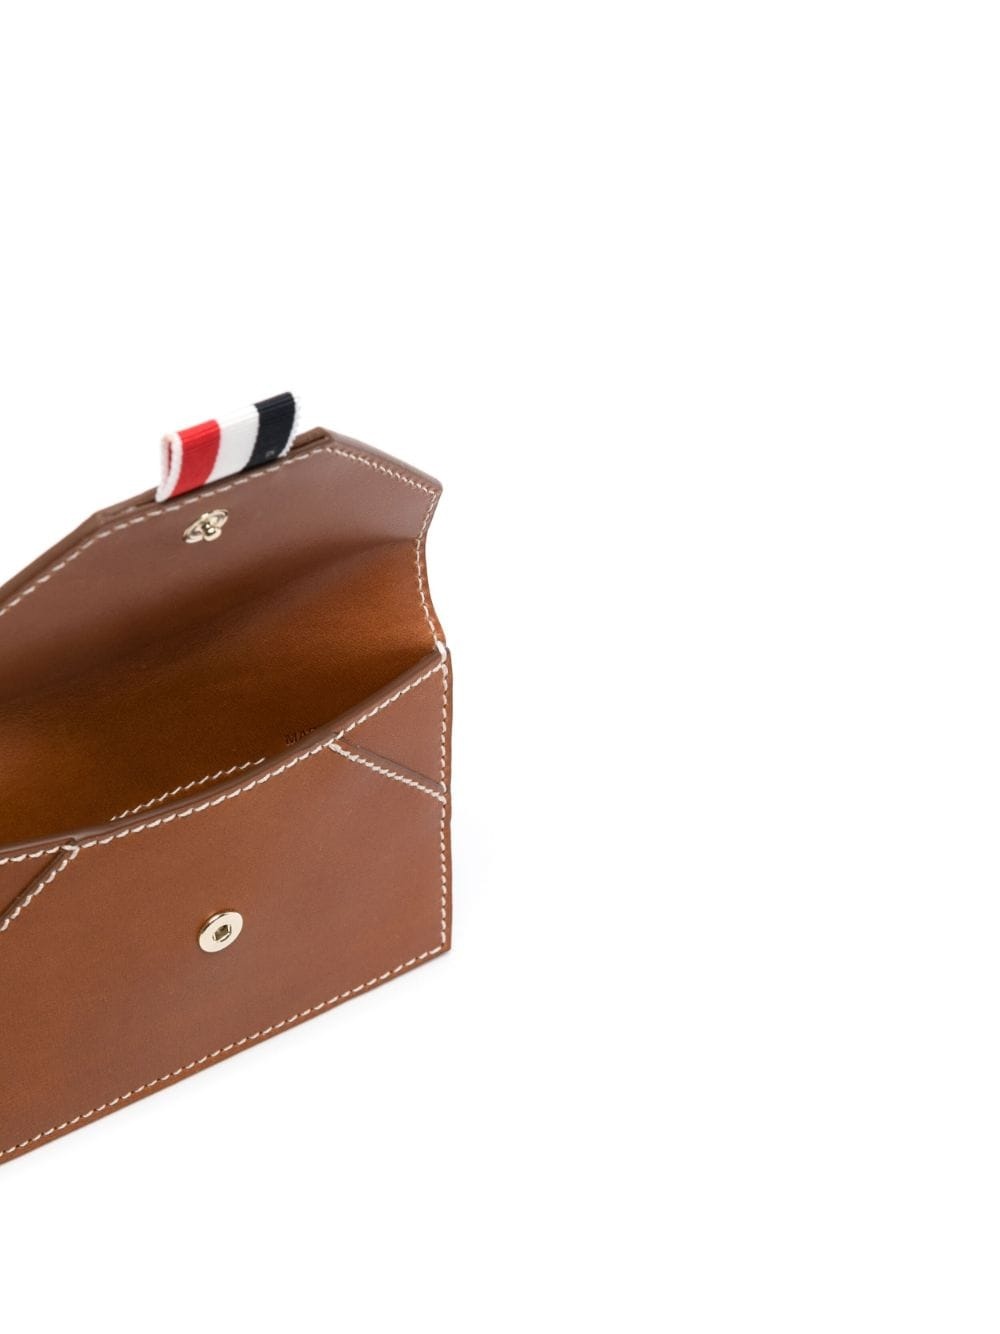 envelope leather cardholder - 3